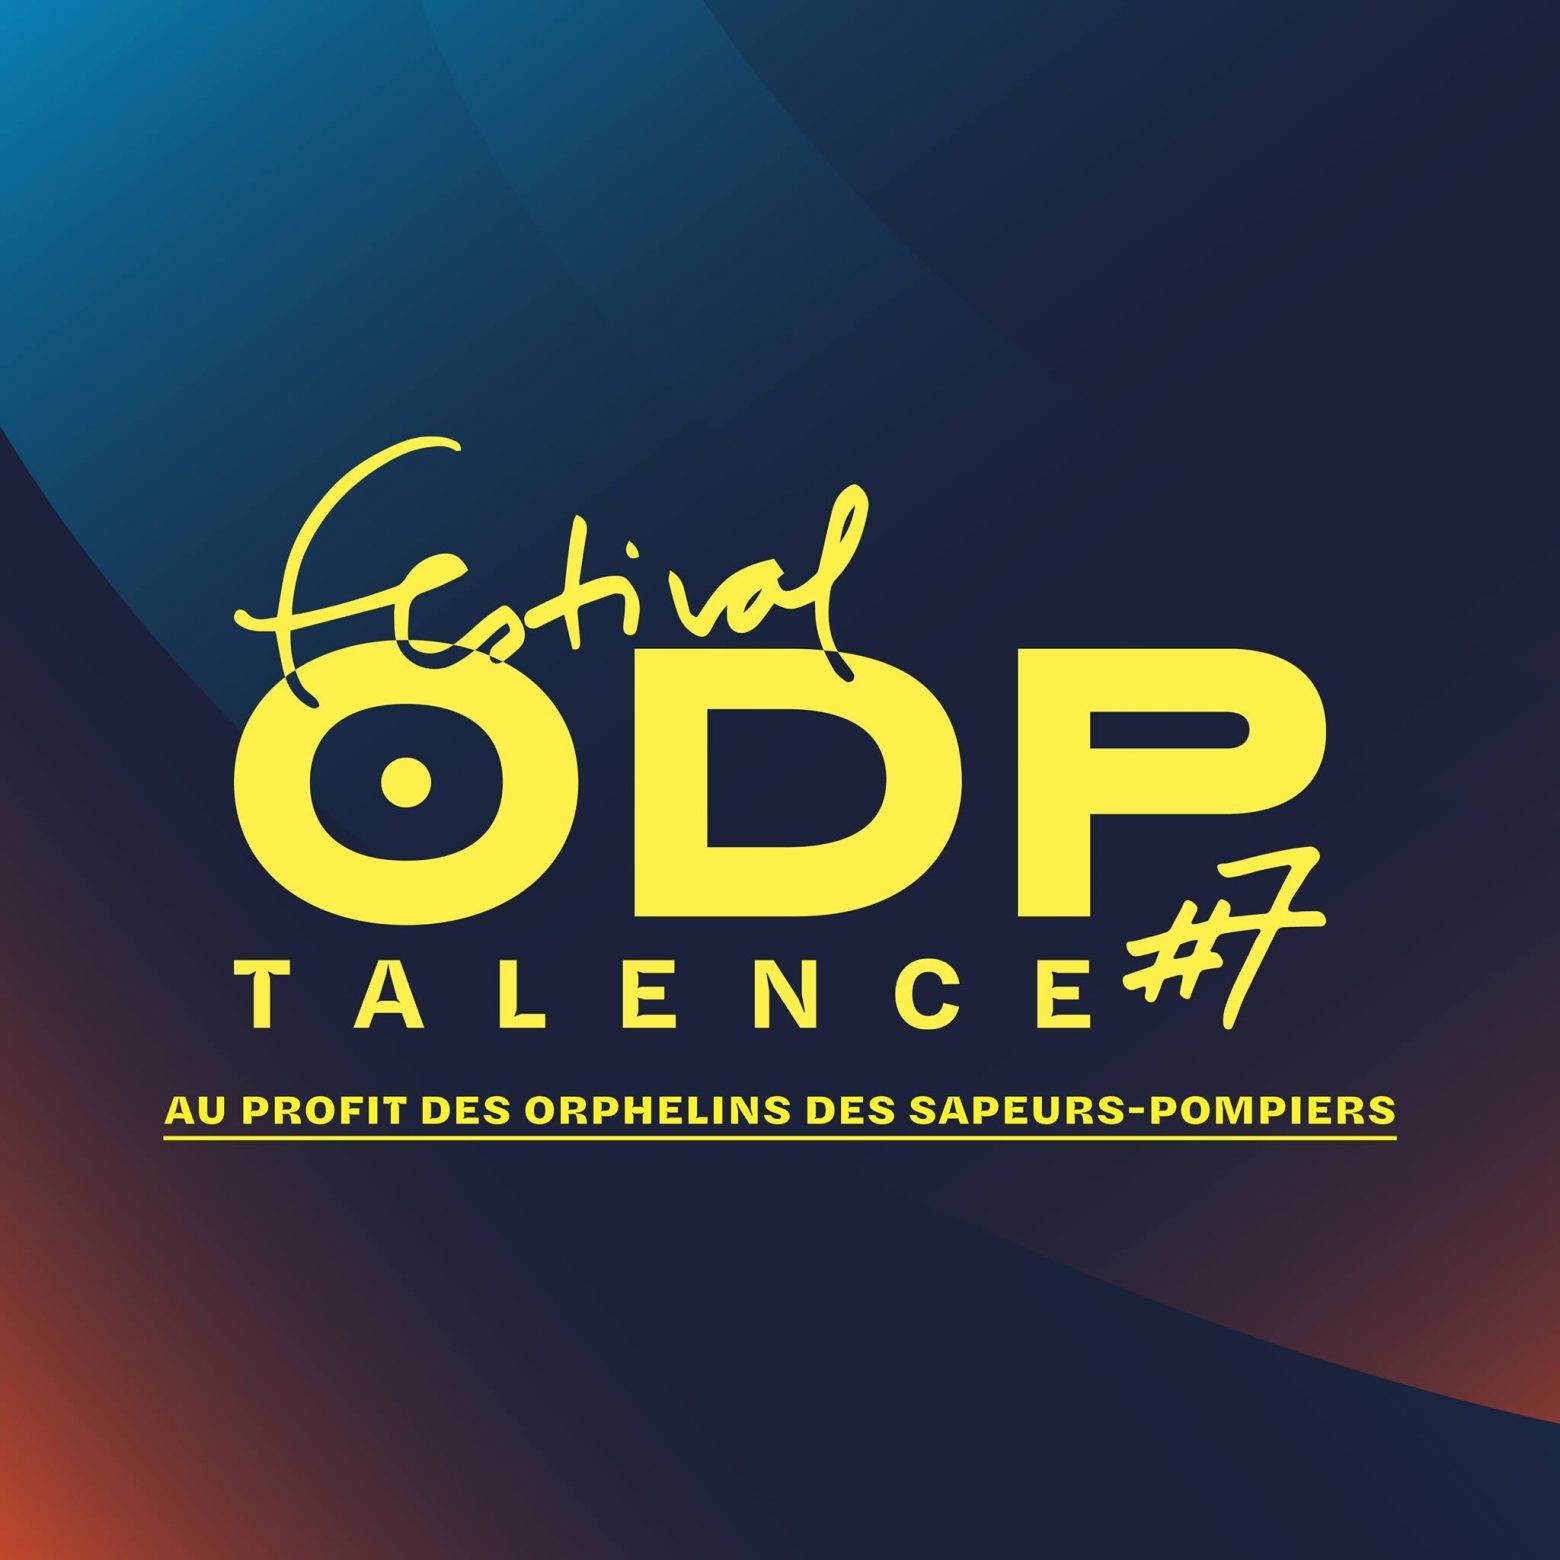 Festival ODP Talence